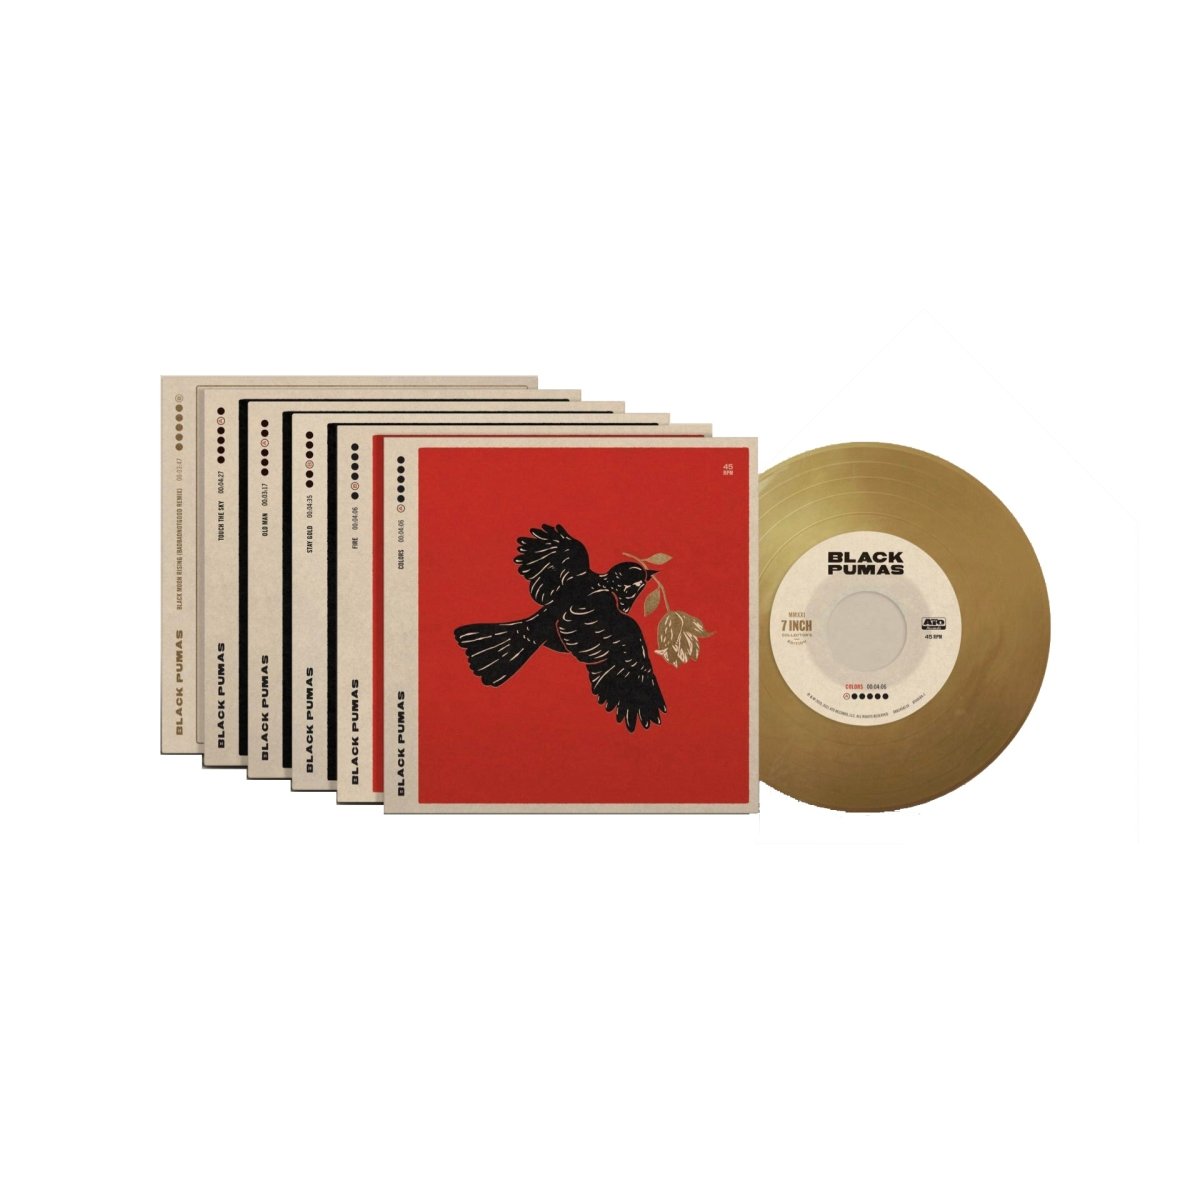 Black Pumas - Black Pumas (7" Box Set) 7" Box Set Vinyl – Saint